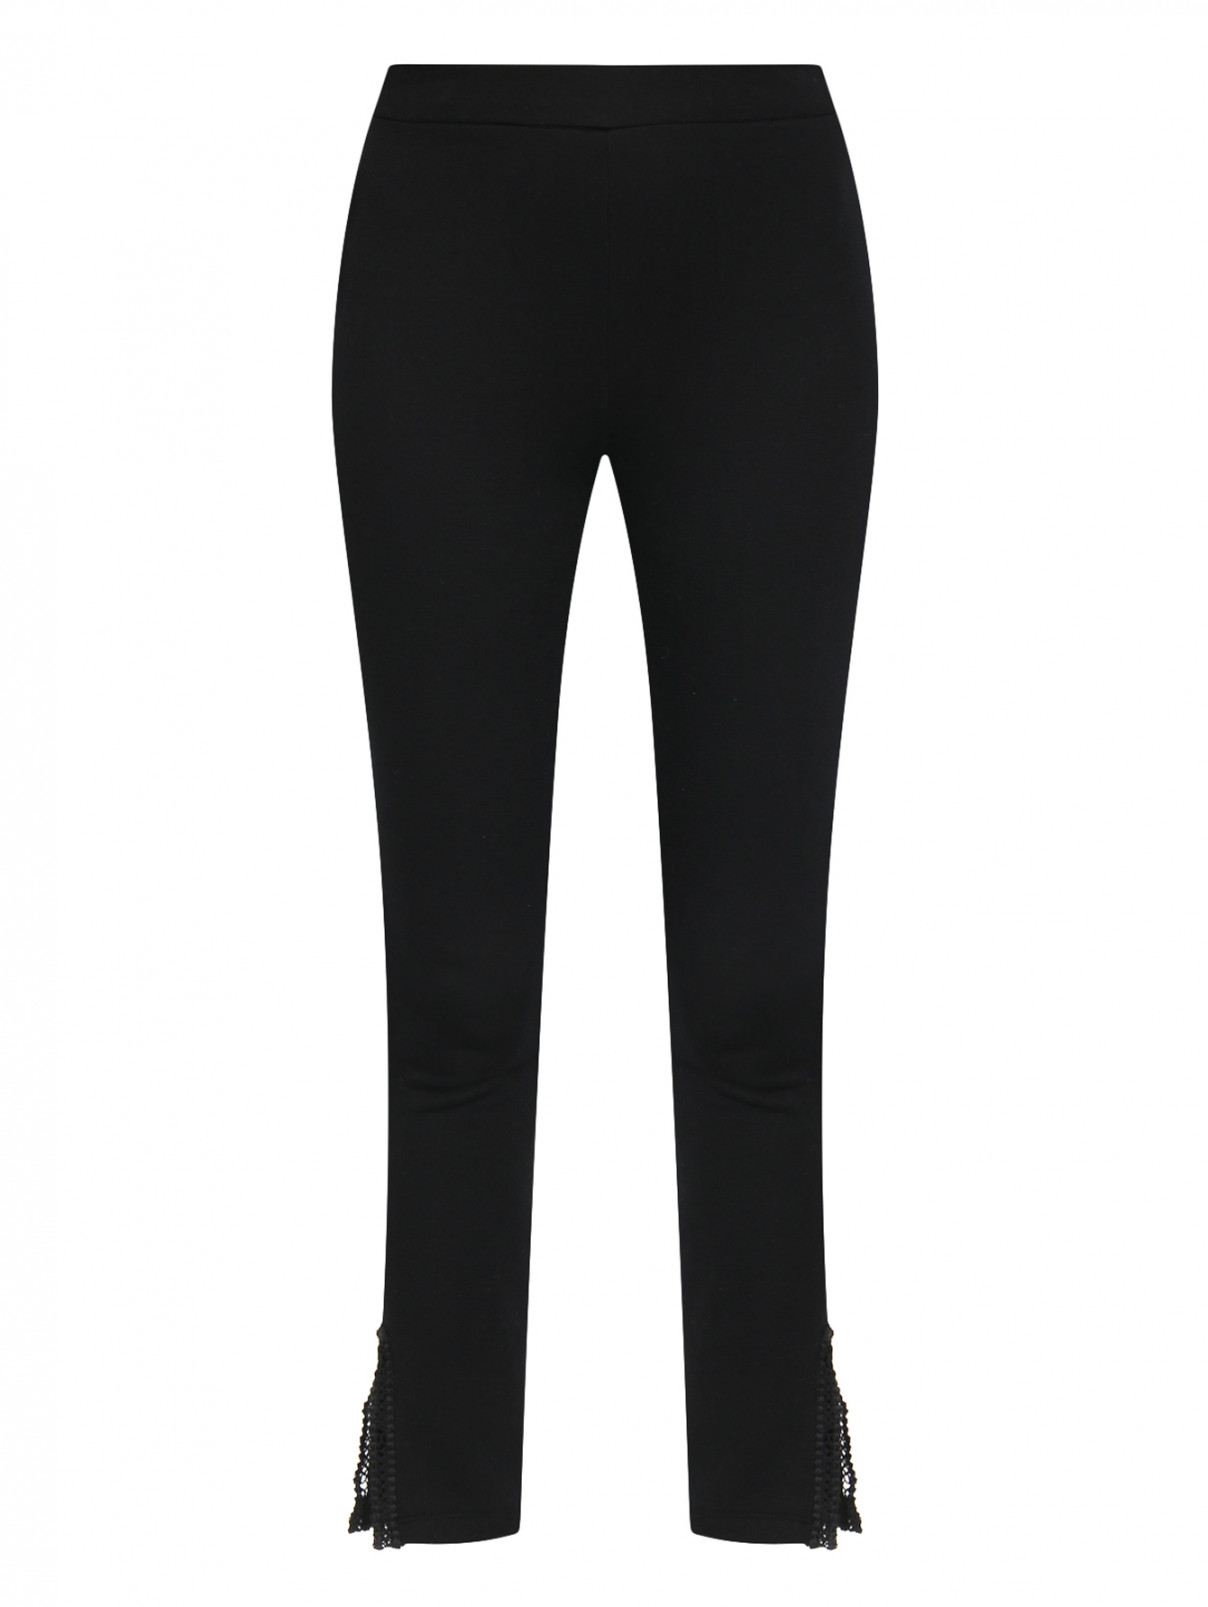 Трикотажные брюки на резинке с кружевной отделкой Ermanno Scervino  –  Общий вид  – Цвет:  Черный